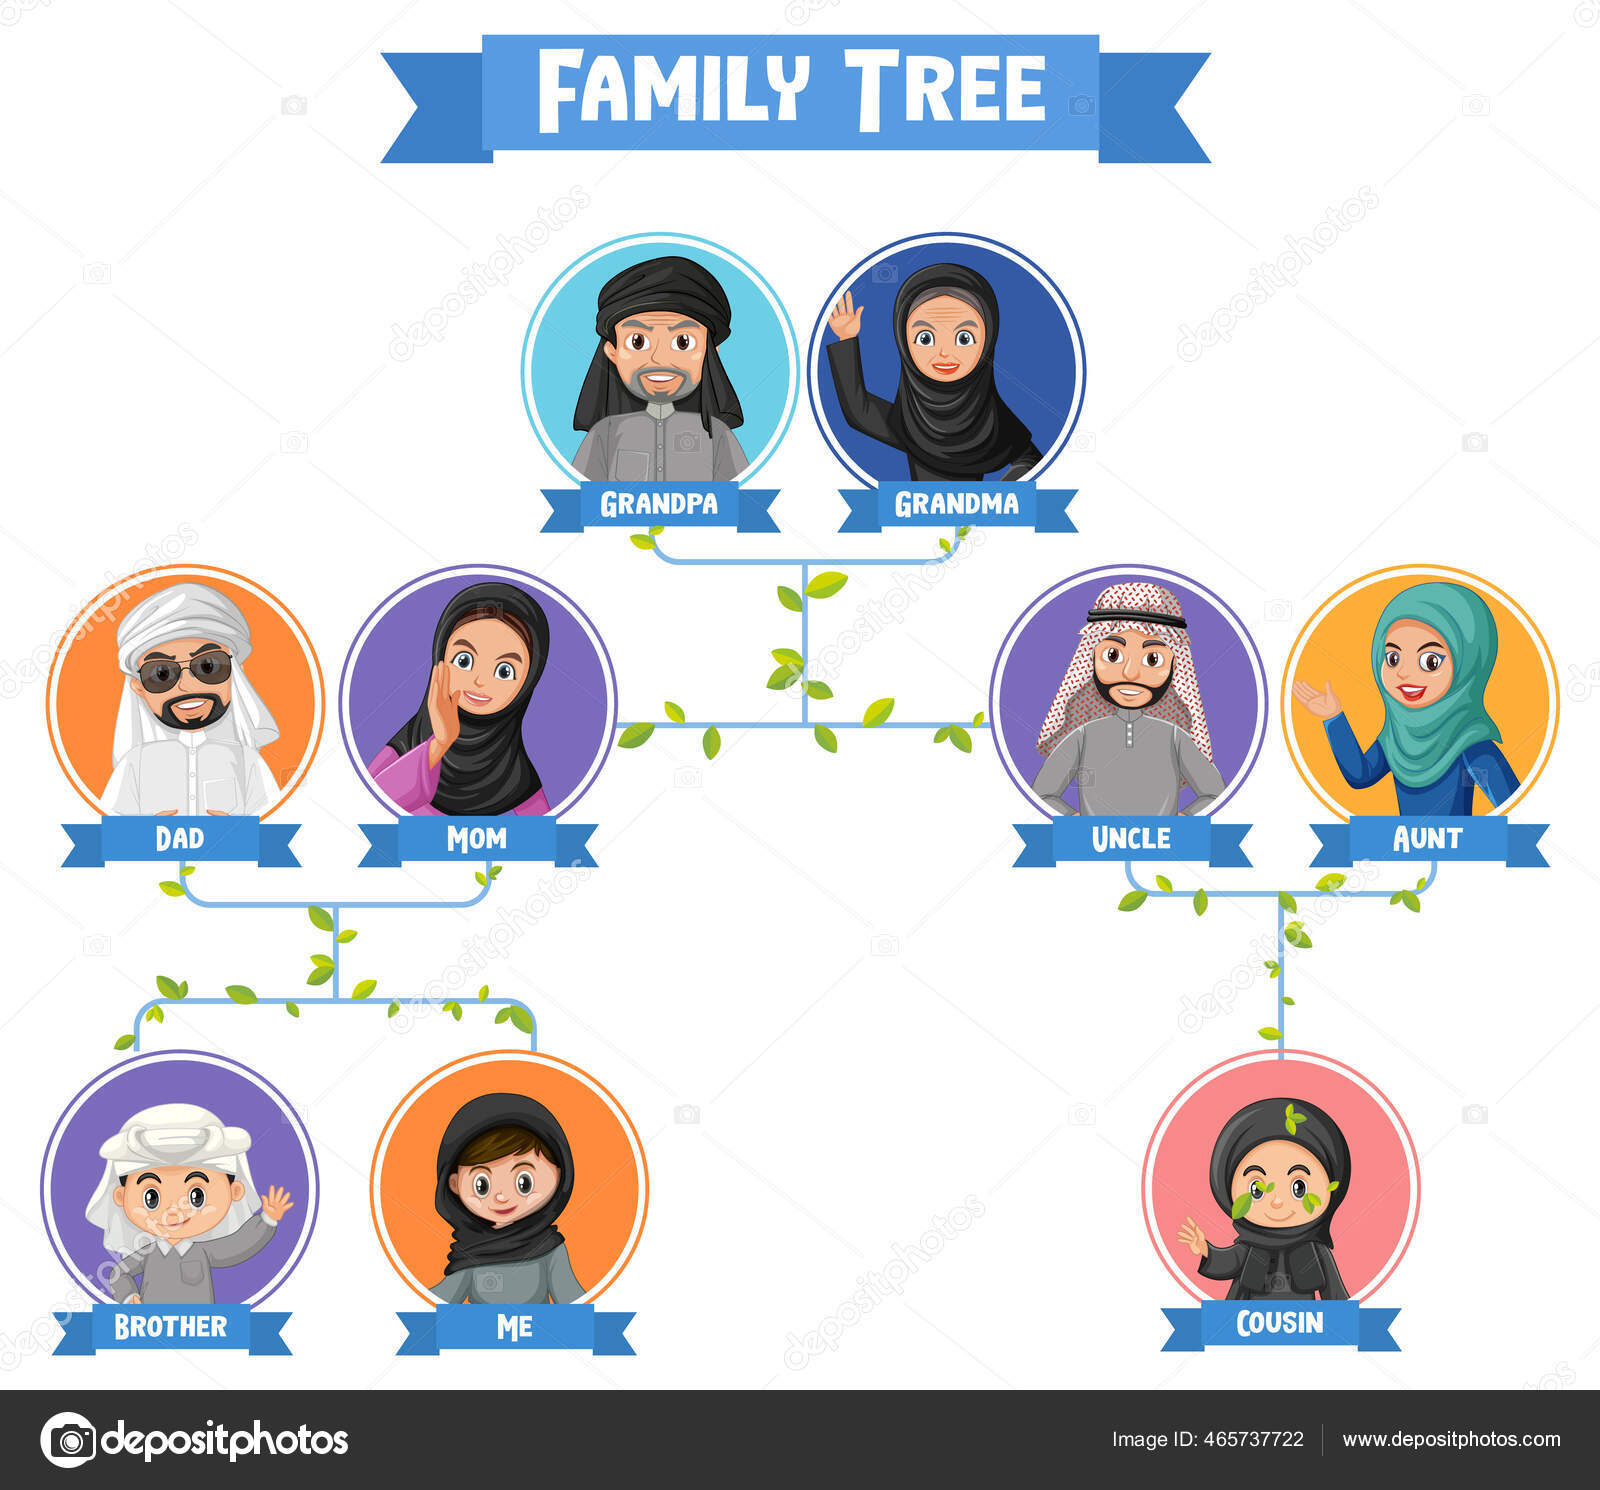 Diagrama que muestra el árbol genealógico de tres generaciones.